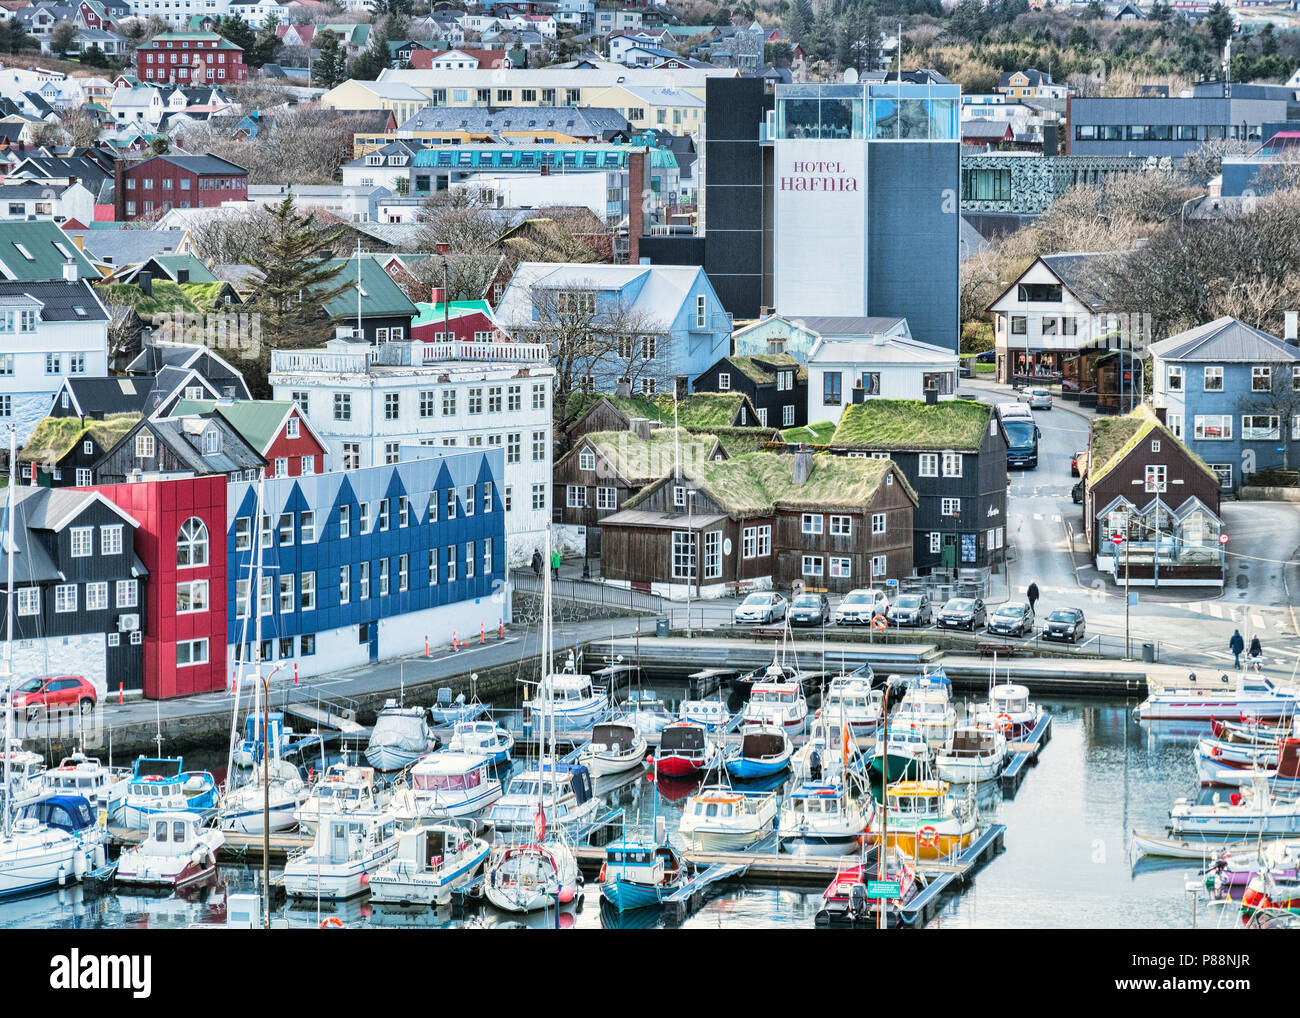 26. April 2018: Tórshavn, Färöer Inseln - Der Hafen, traditionelle Gras roofed Häuser und das Hotel Hafnia im Zentrum der Stadt. Stockfoto